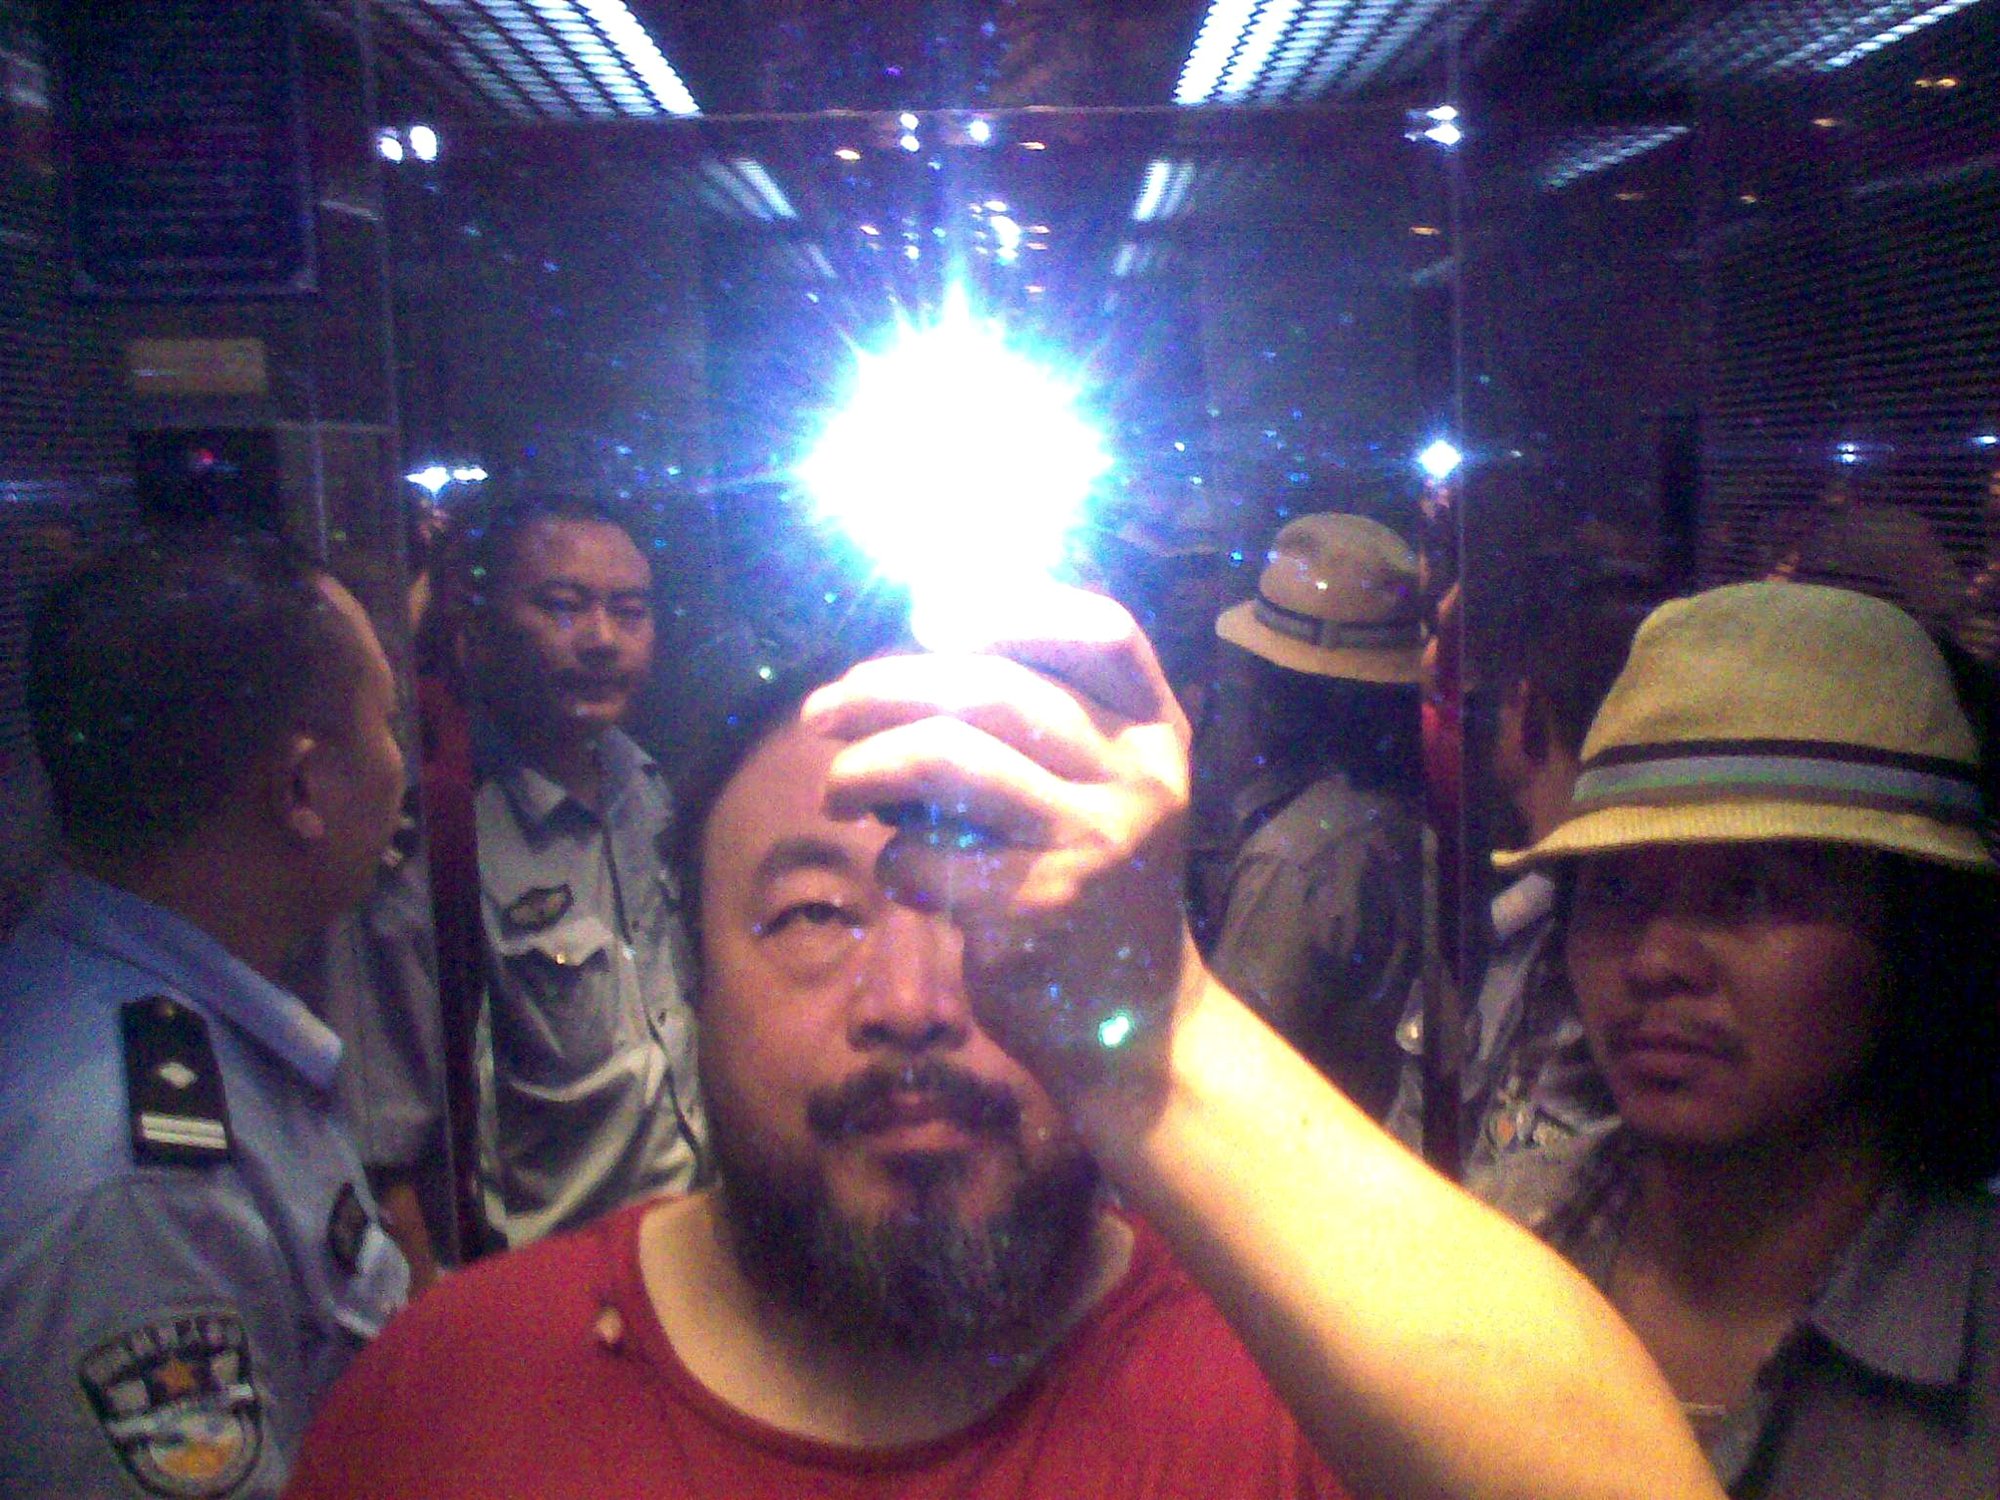 Fotografie "Illumination" des zeitgenössischen Künstlers Ai Weiwei aus dem Jahr 2014, das in der Ausstellung "Ich bin hier" vom 31. Oktober 2015 bis 31. Januar 2016 in der Staatlichen Kunsthalle Karlsruhe zu sehen war.